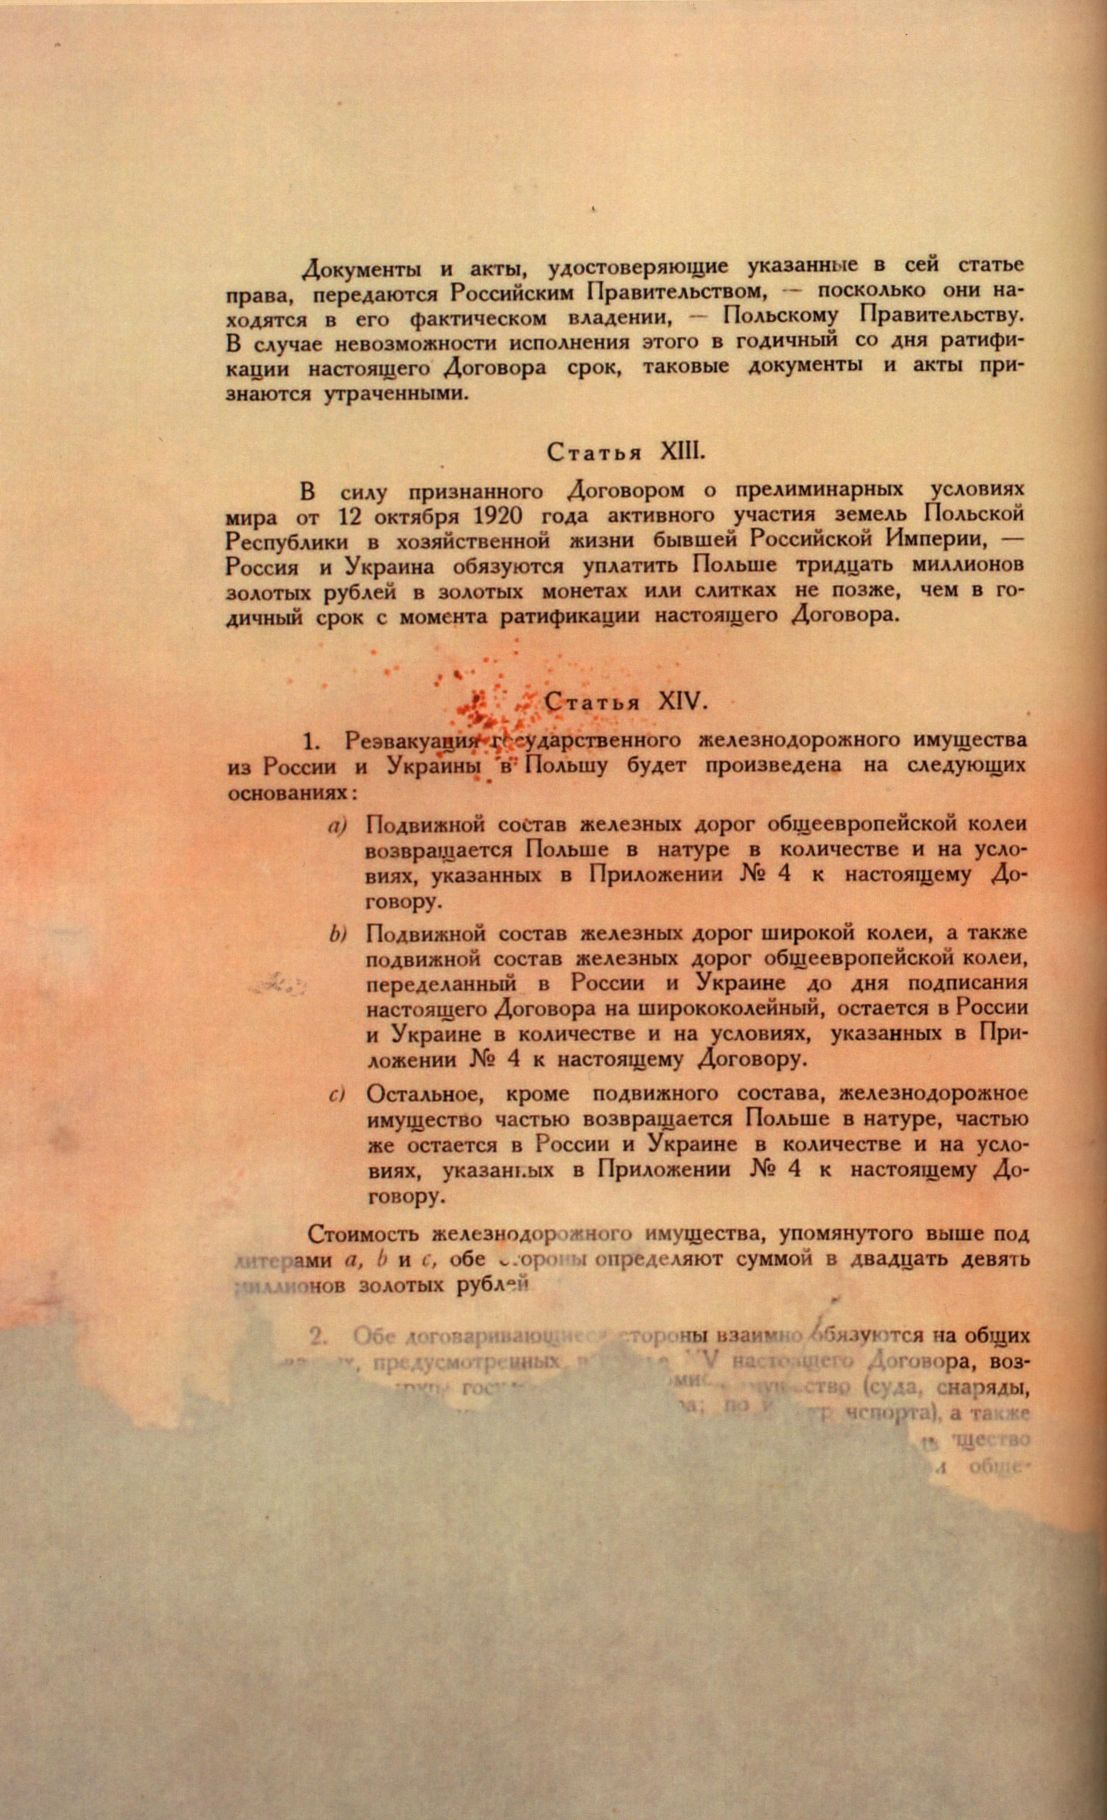 Traktat Pokoju między Polską a Rosją i Ukrainą podpisany w Rydze dnia 18 marca 1921 roku, s. 80, MSZ, sygn. 6739.